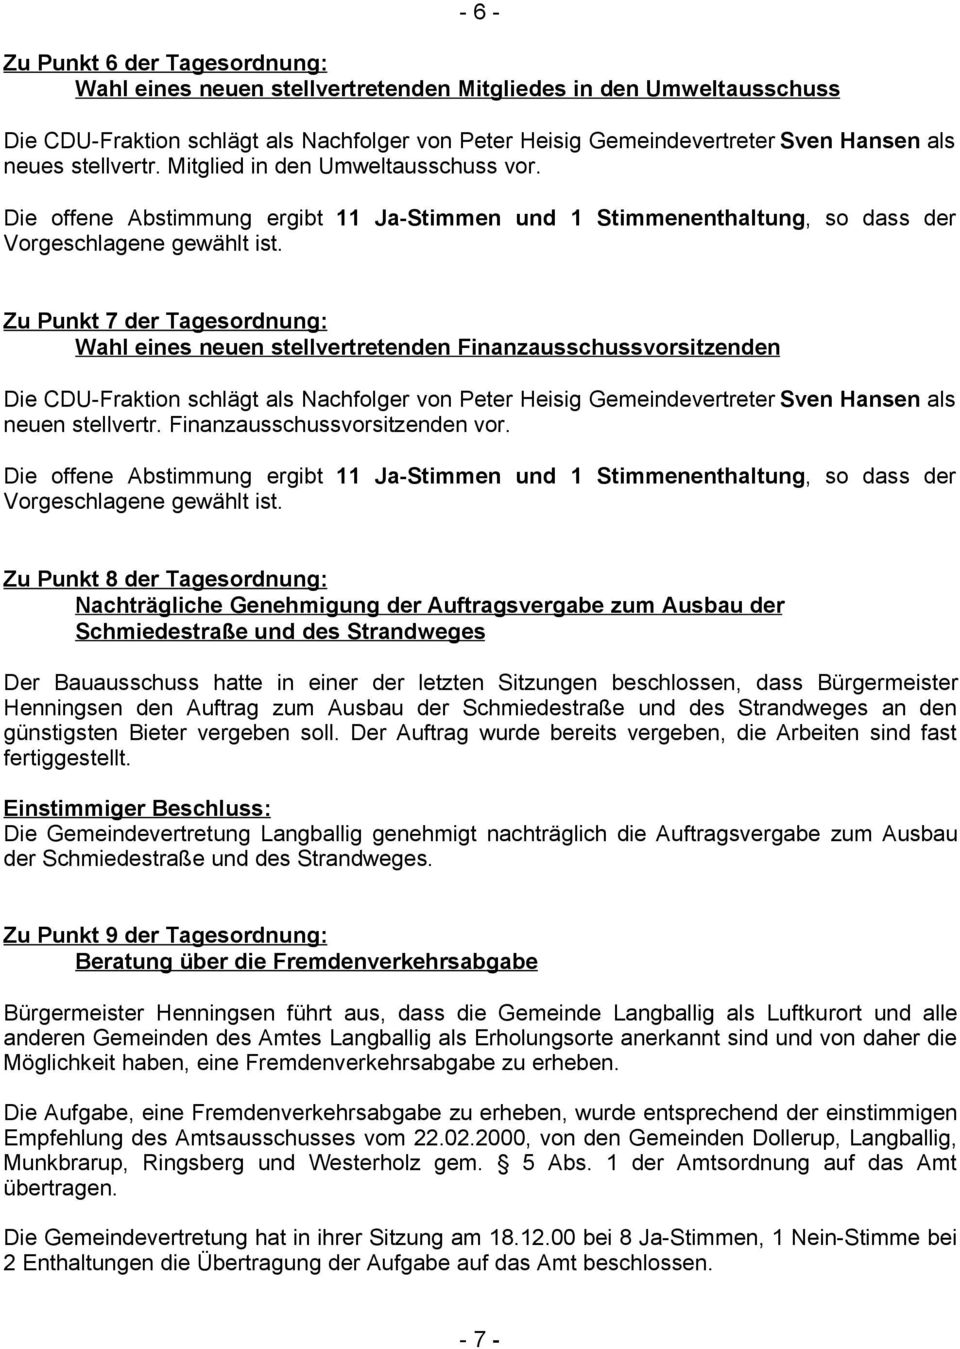 Zu Punkt 7 der Tagesordnung: Wahl eines neuen stellvertretenden Finanzausschussvorsitzenden Die CDU-Fraktion schlägt als Nachfolger von Peter Heisig Gemeindevertreter Sven Hansen als neuen stellvertr.